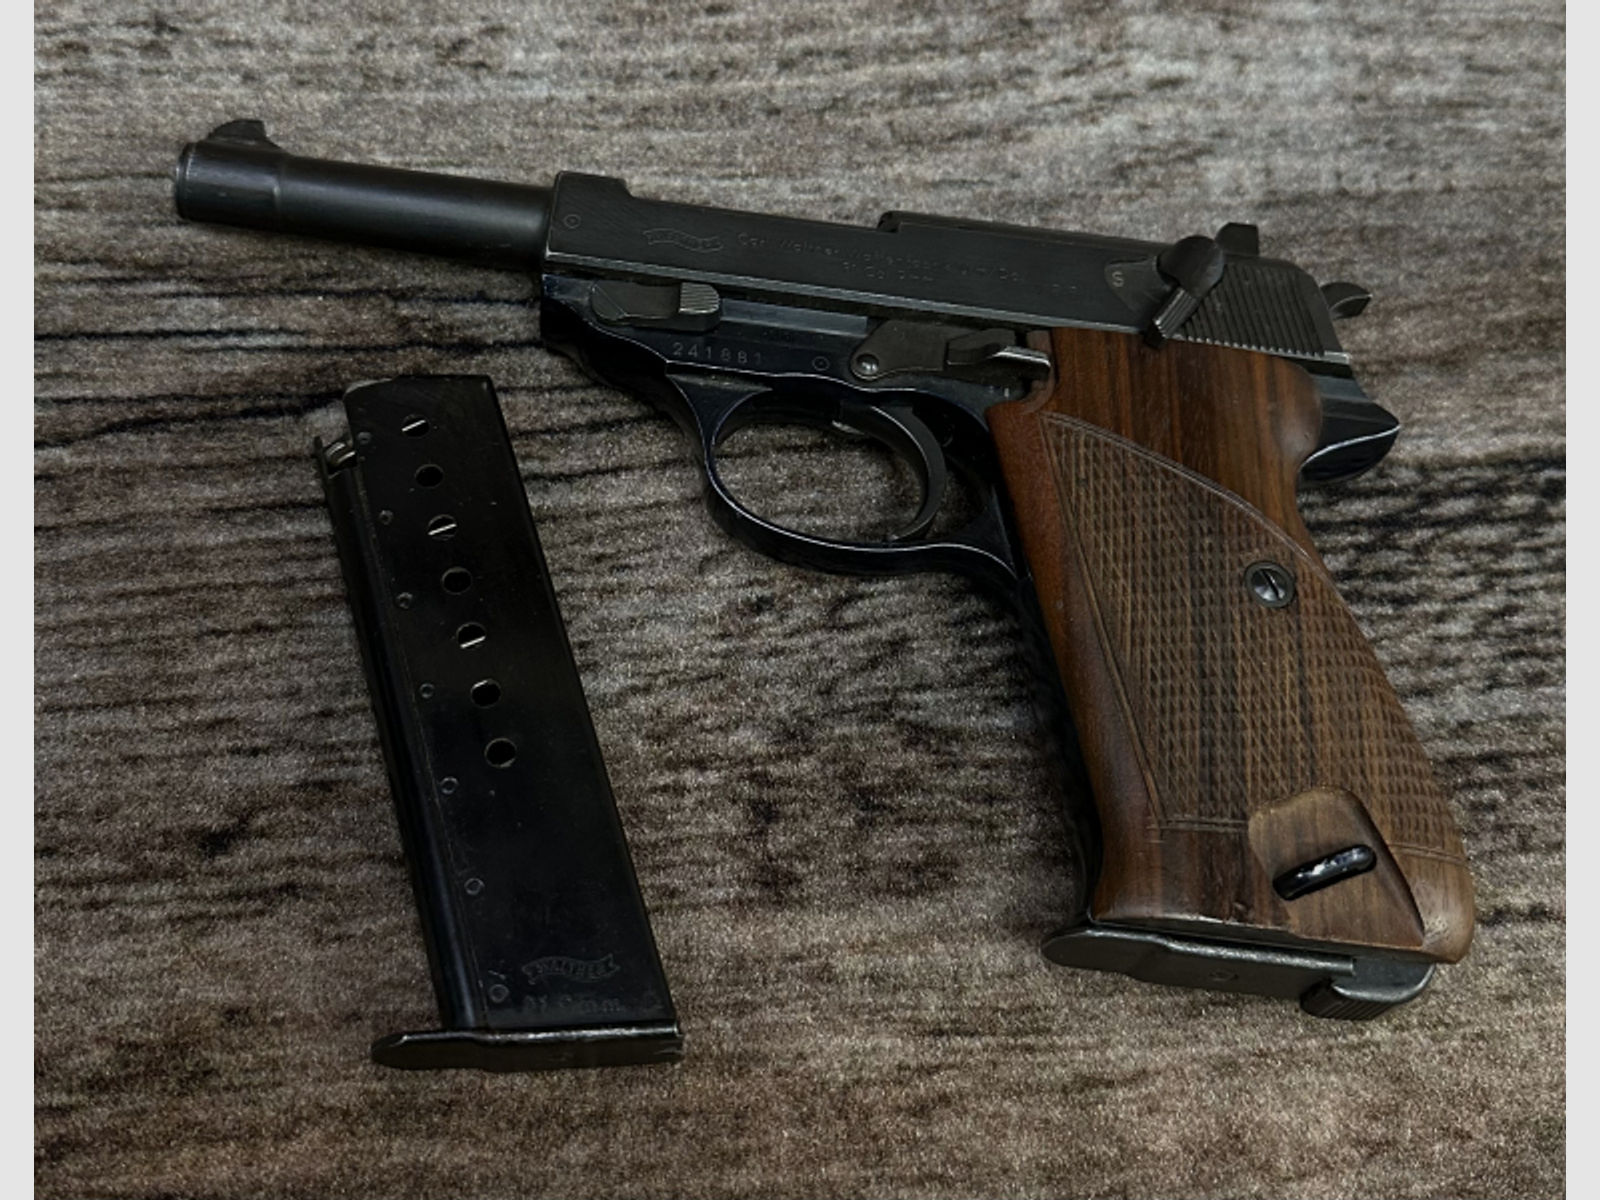 !SAMMLER AUFGEPASST! Pistole Carl Walther Mod. P1 (P38) Kal.:9mm Para